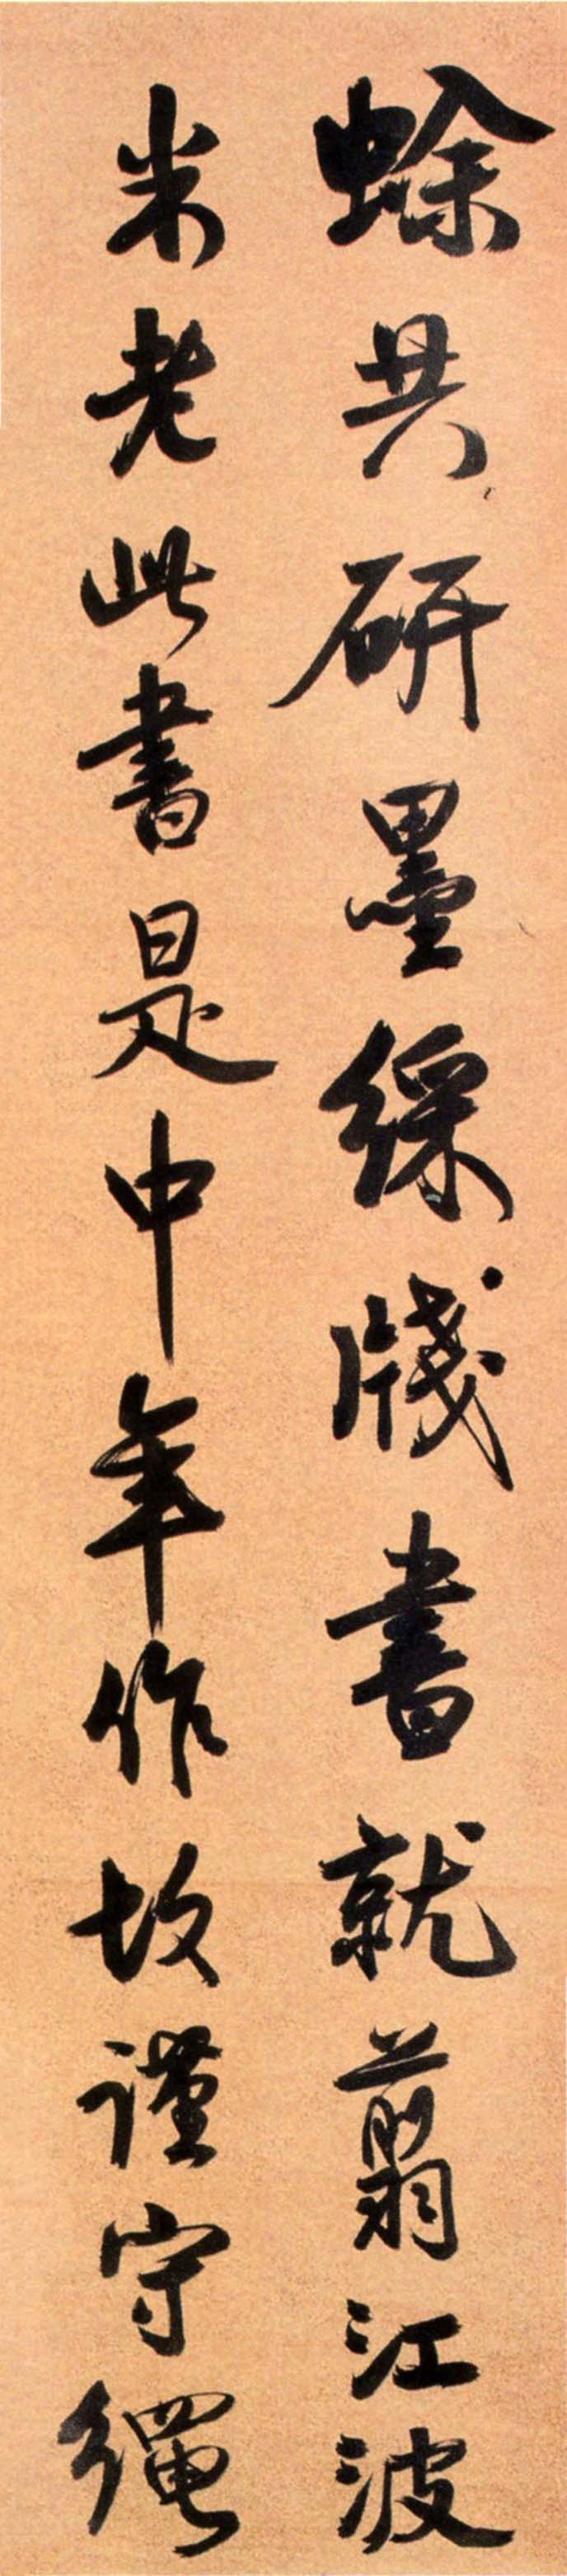 谭延闿《行书临米芾诗四条屏》-常州博物馆藏(图4)